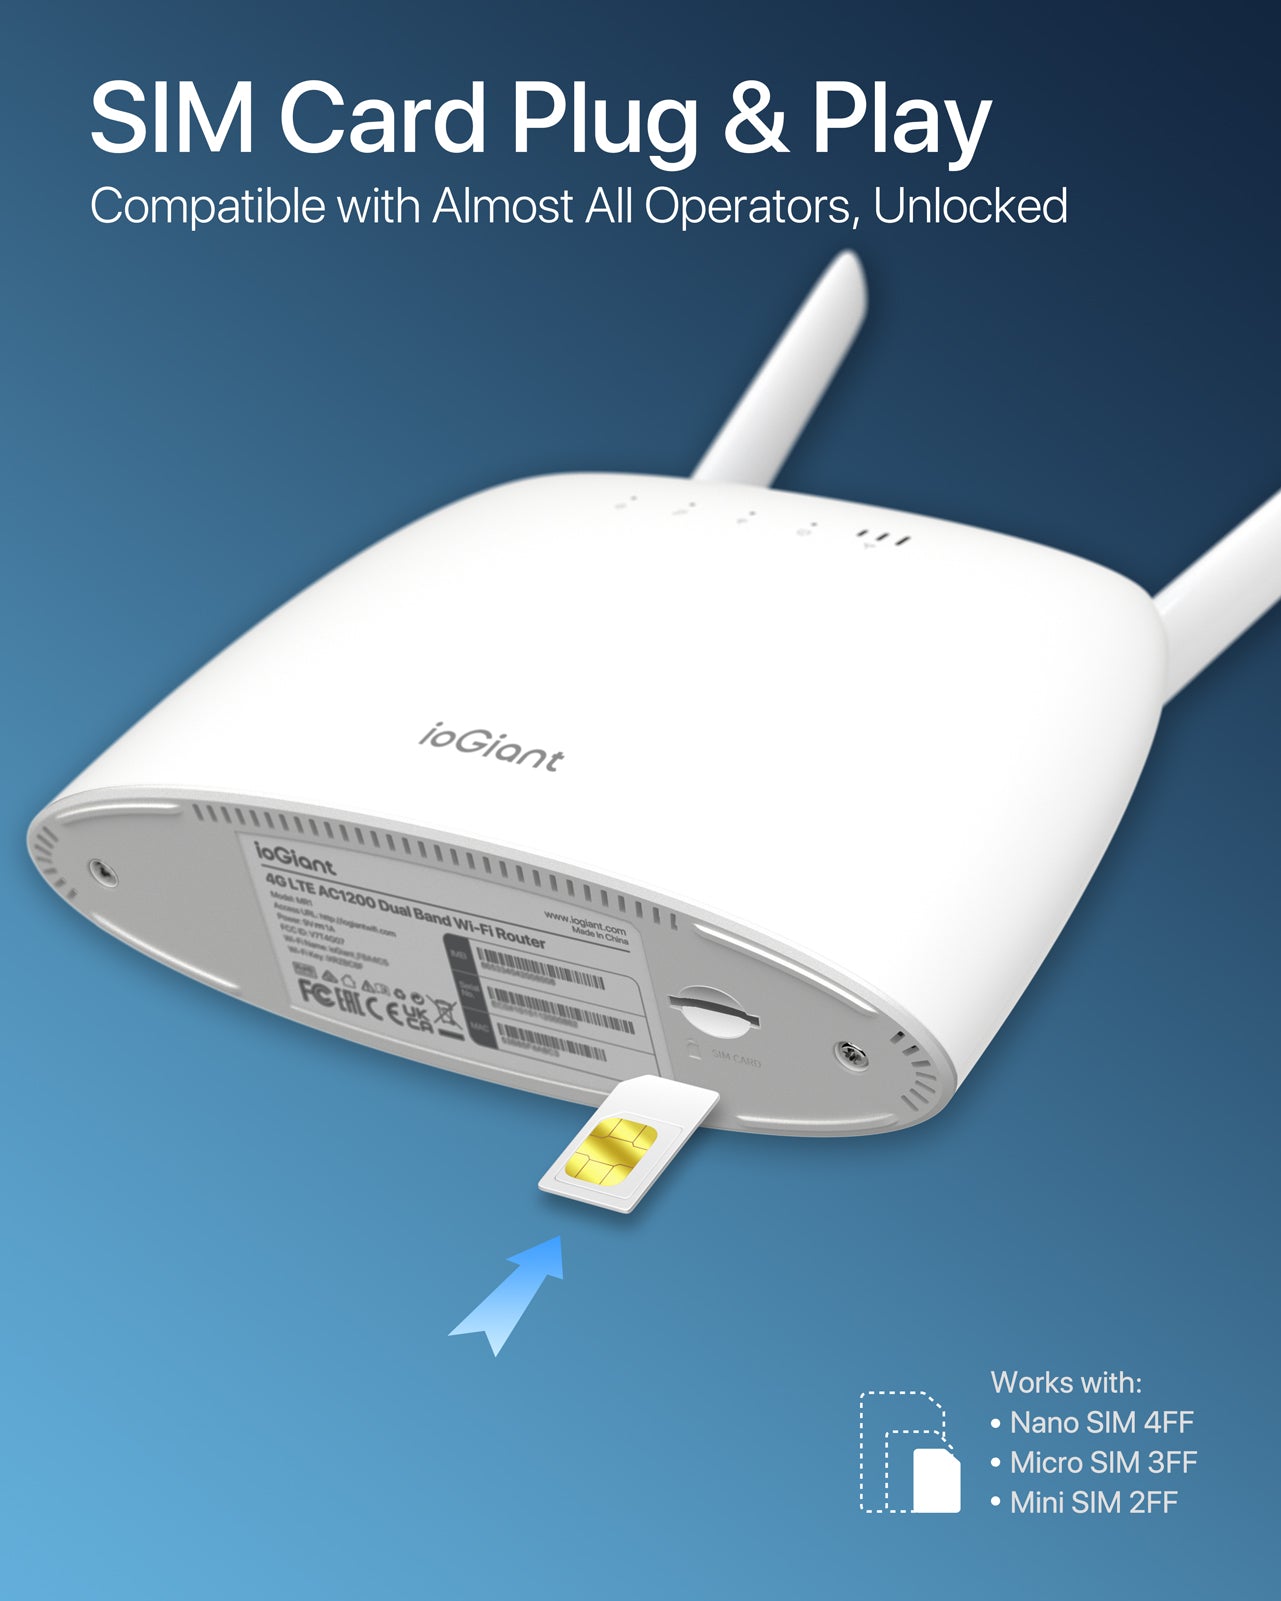 EXVIST Routeur 5G LTE avec emplacement pour carte SIM, routeur Wi